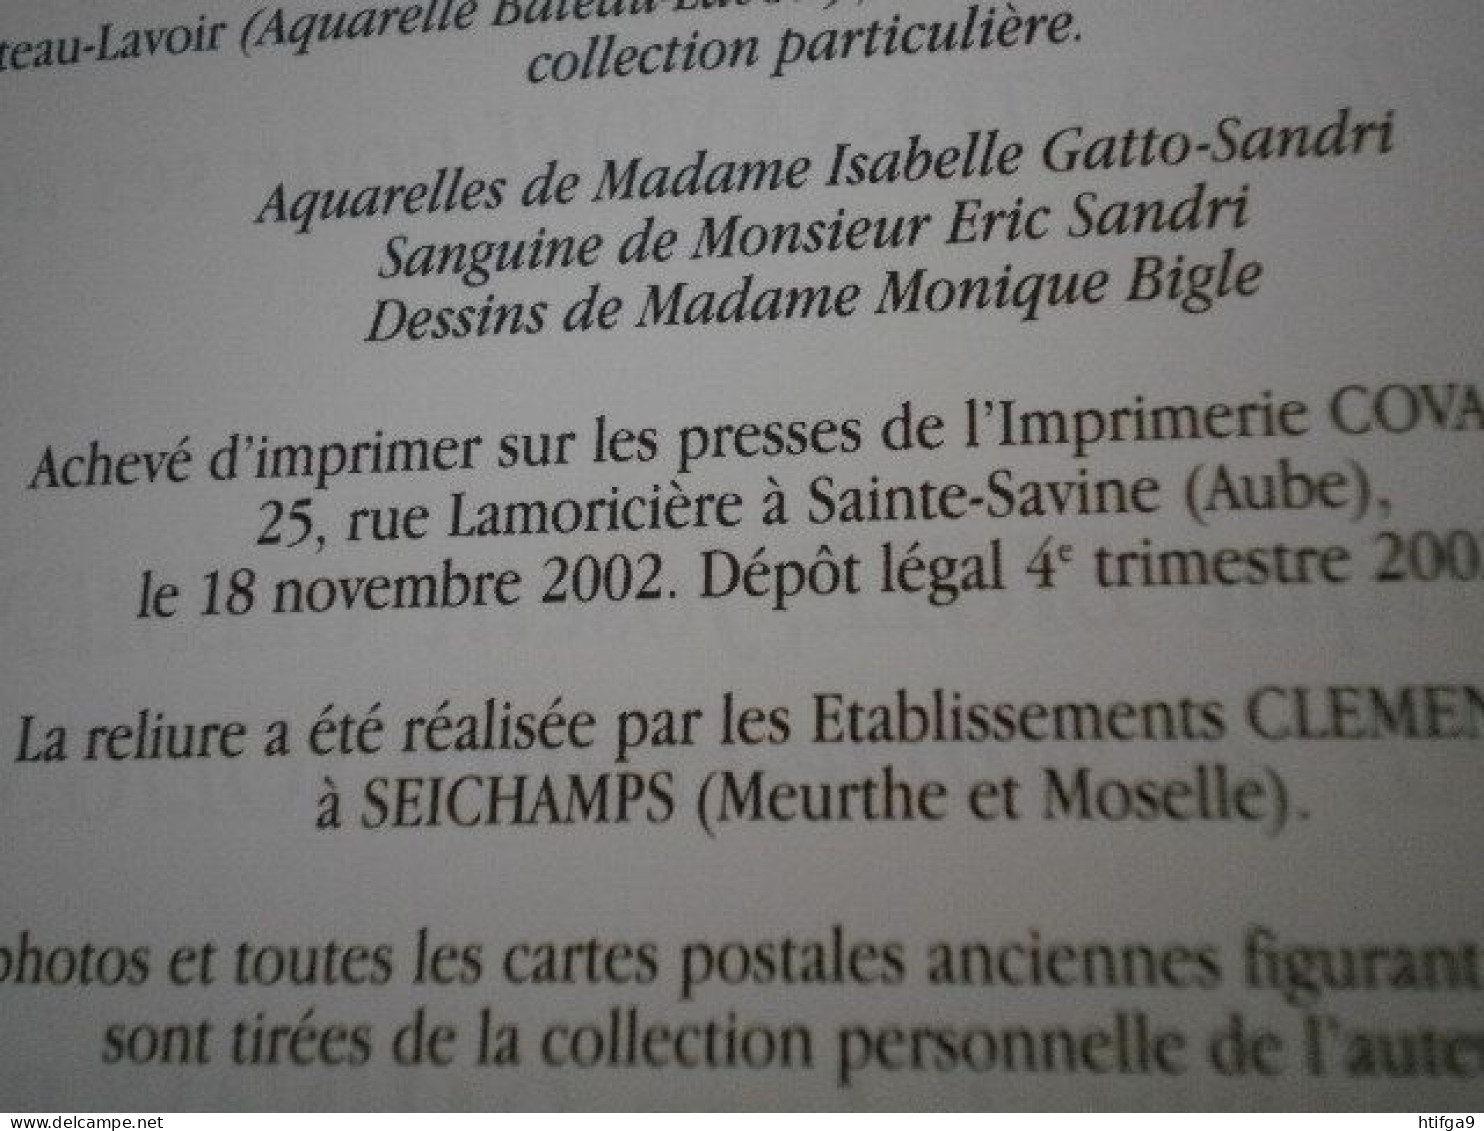 LES 501 LAVOIRS de L' AUBE 2002 D. PEUCHOT 1Kg Troyes Romilly Arcis Brienne Vendeuvre Les Riceys Clairvaux Bar sur Seine